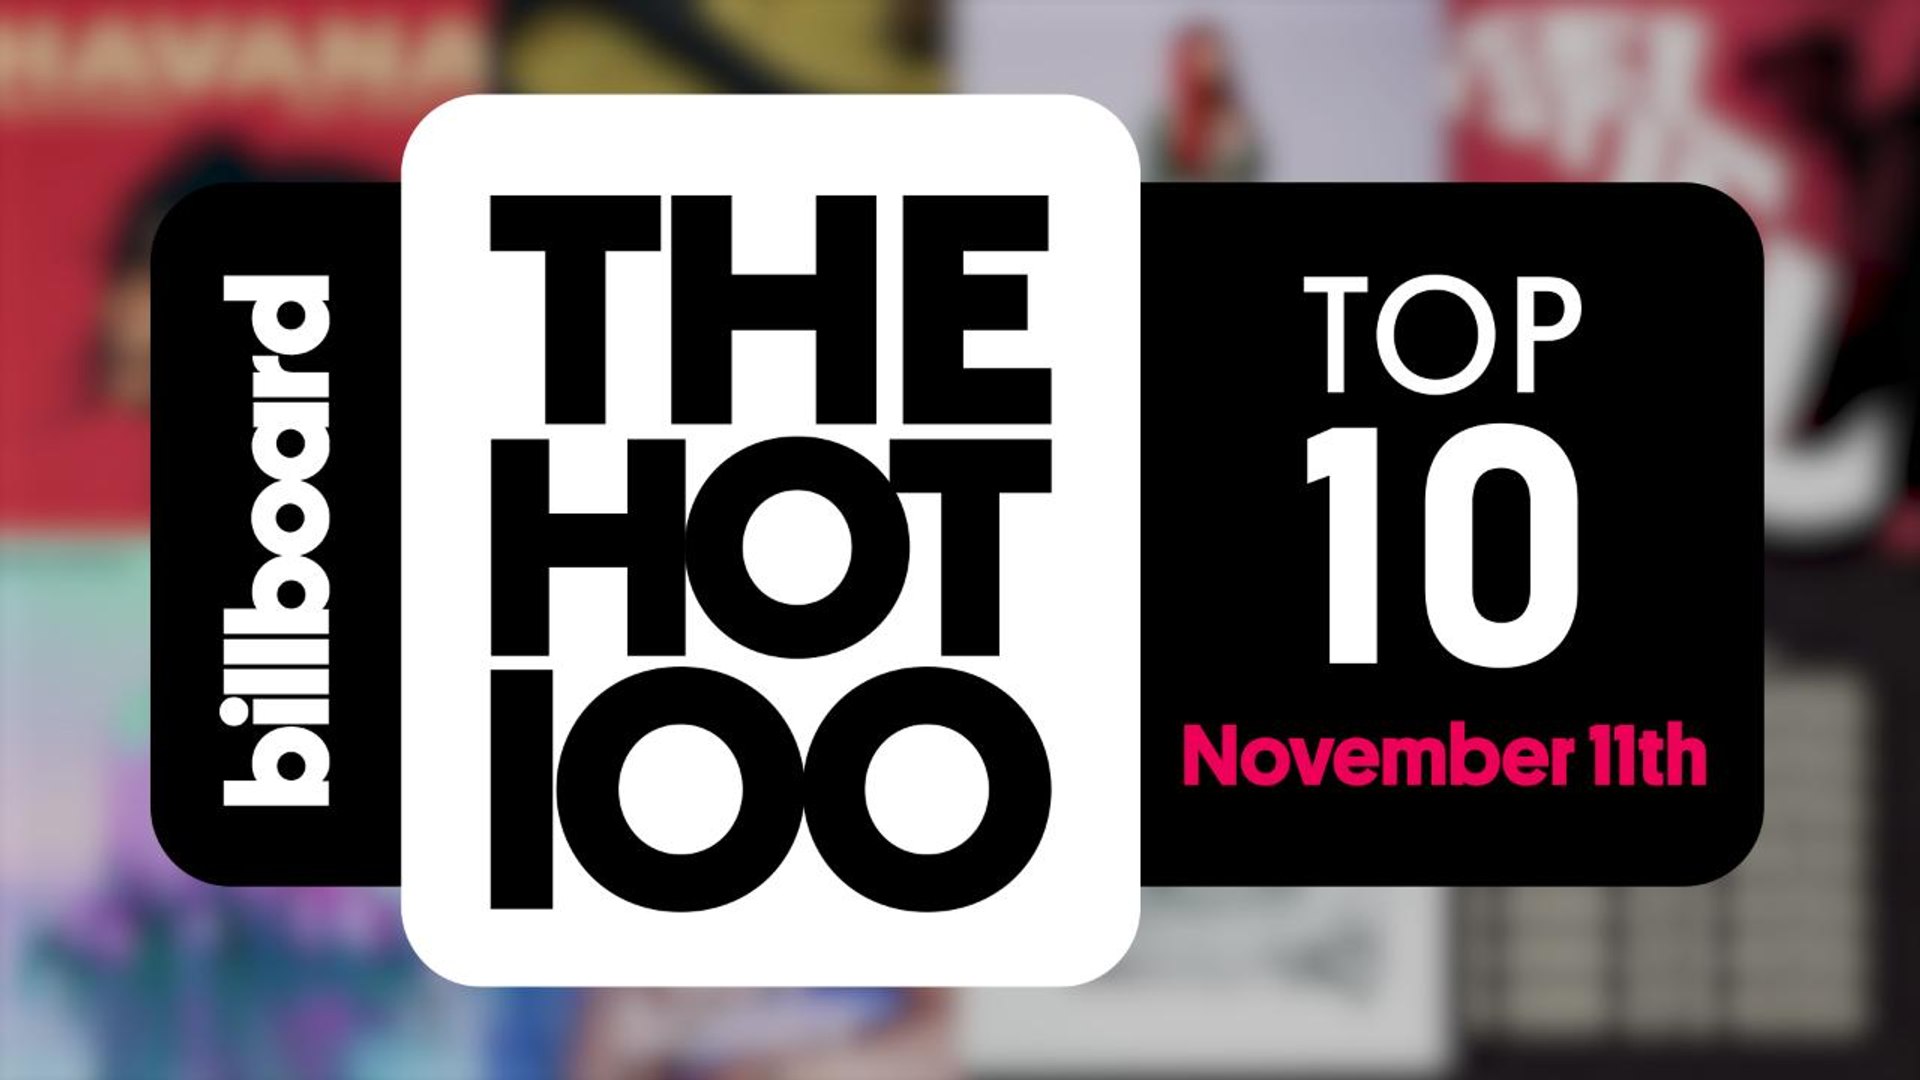 10 ноябрь 2017. November 4th. Billboard hot 100. Новембер 2017. 10 November 2017.